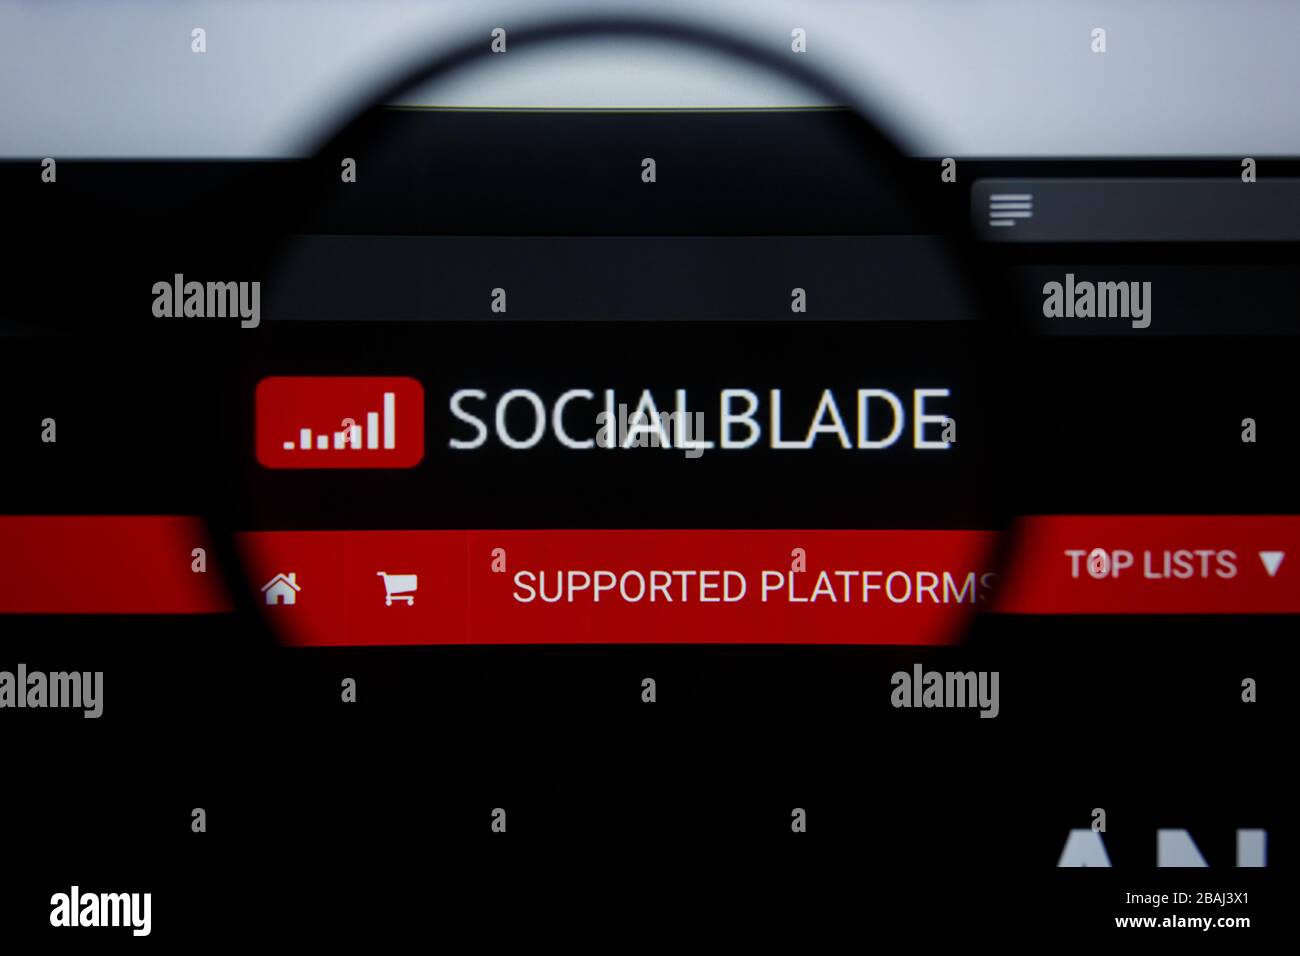 Social blade